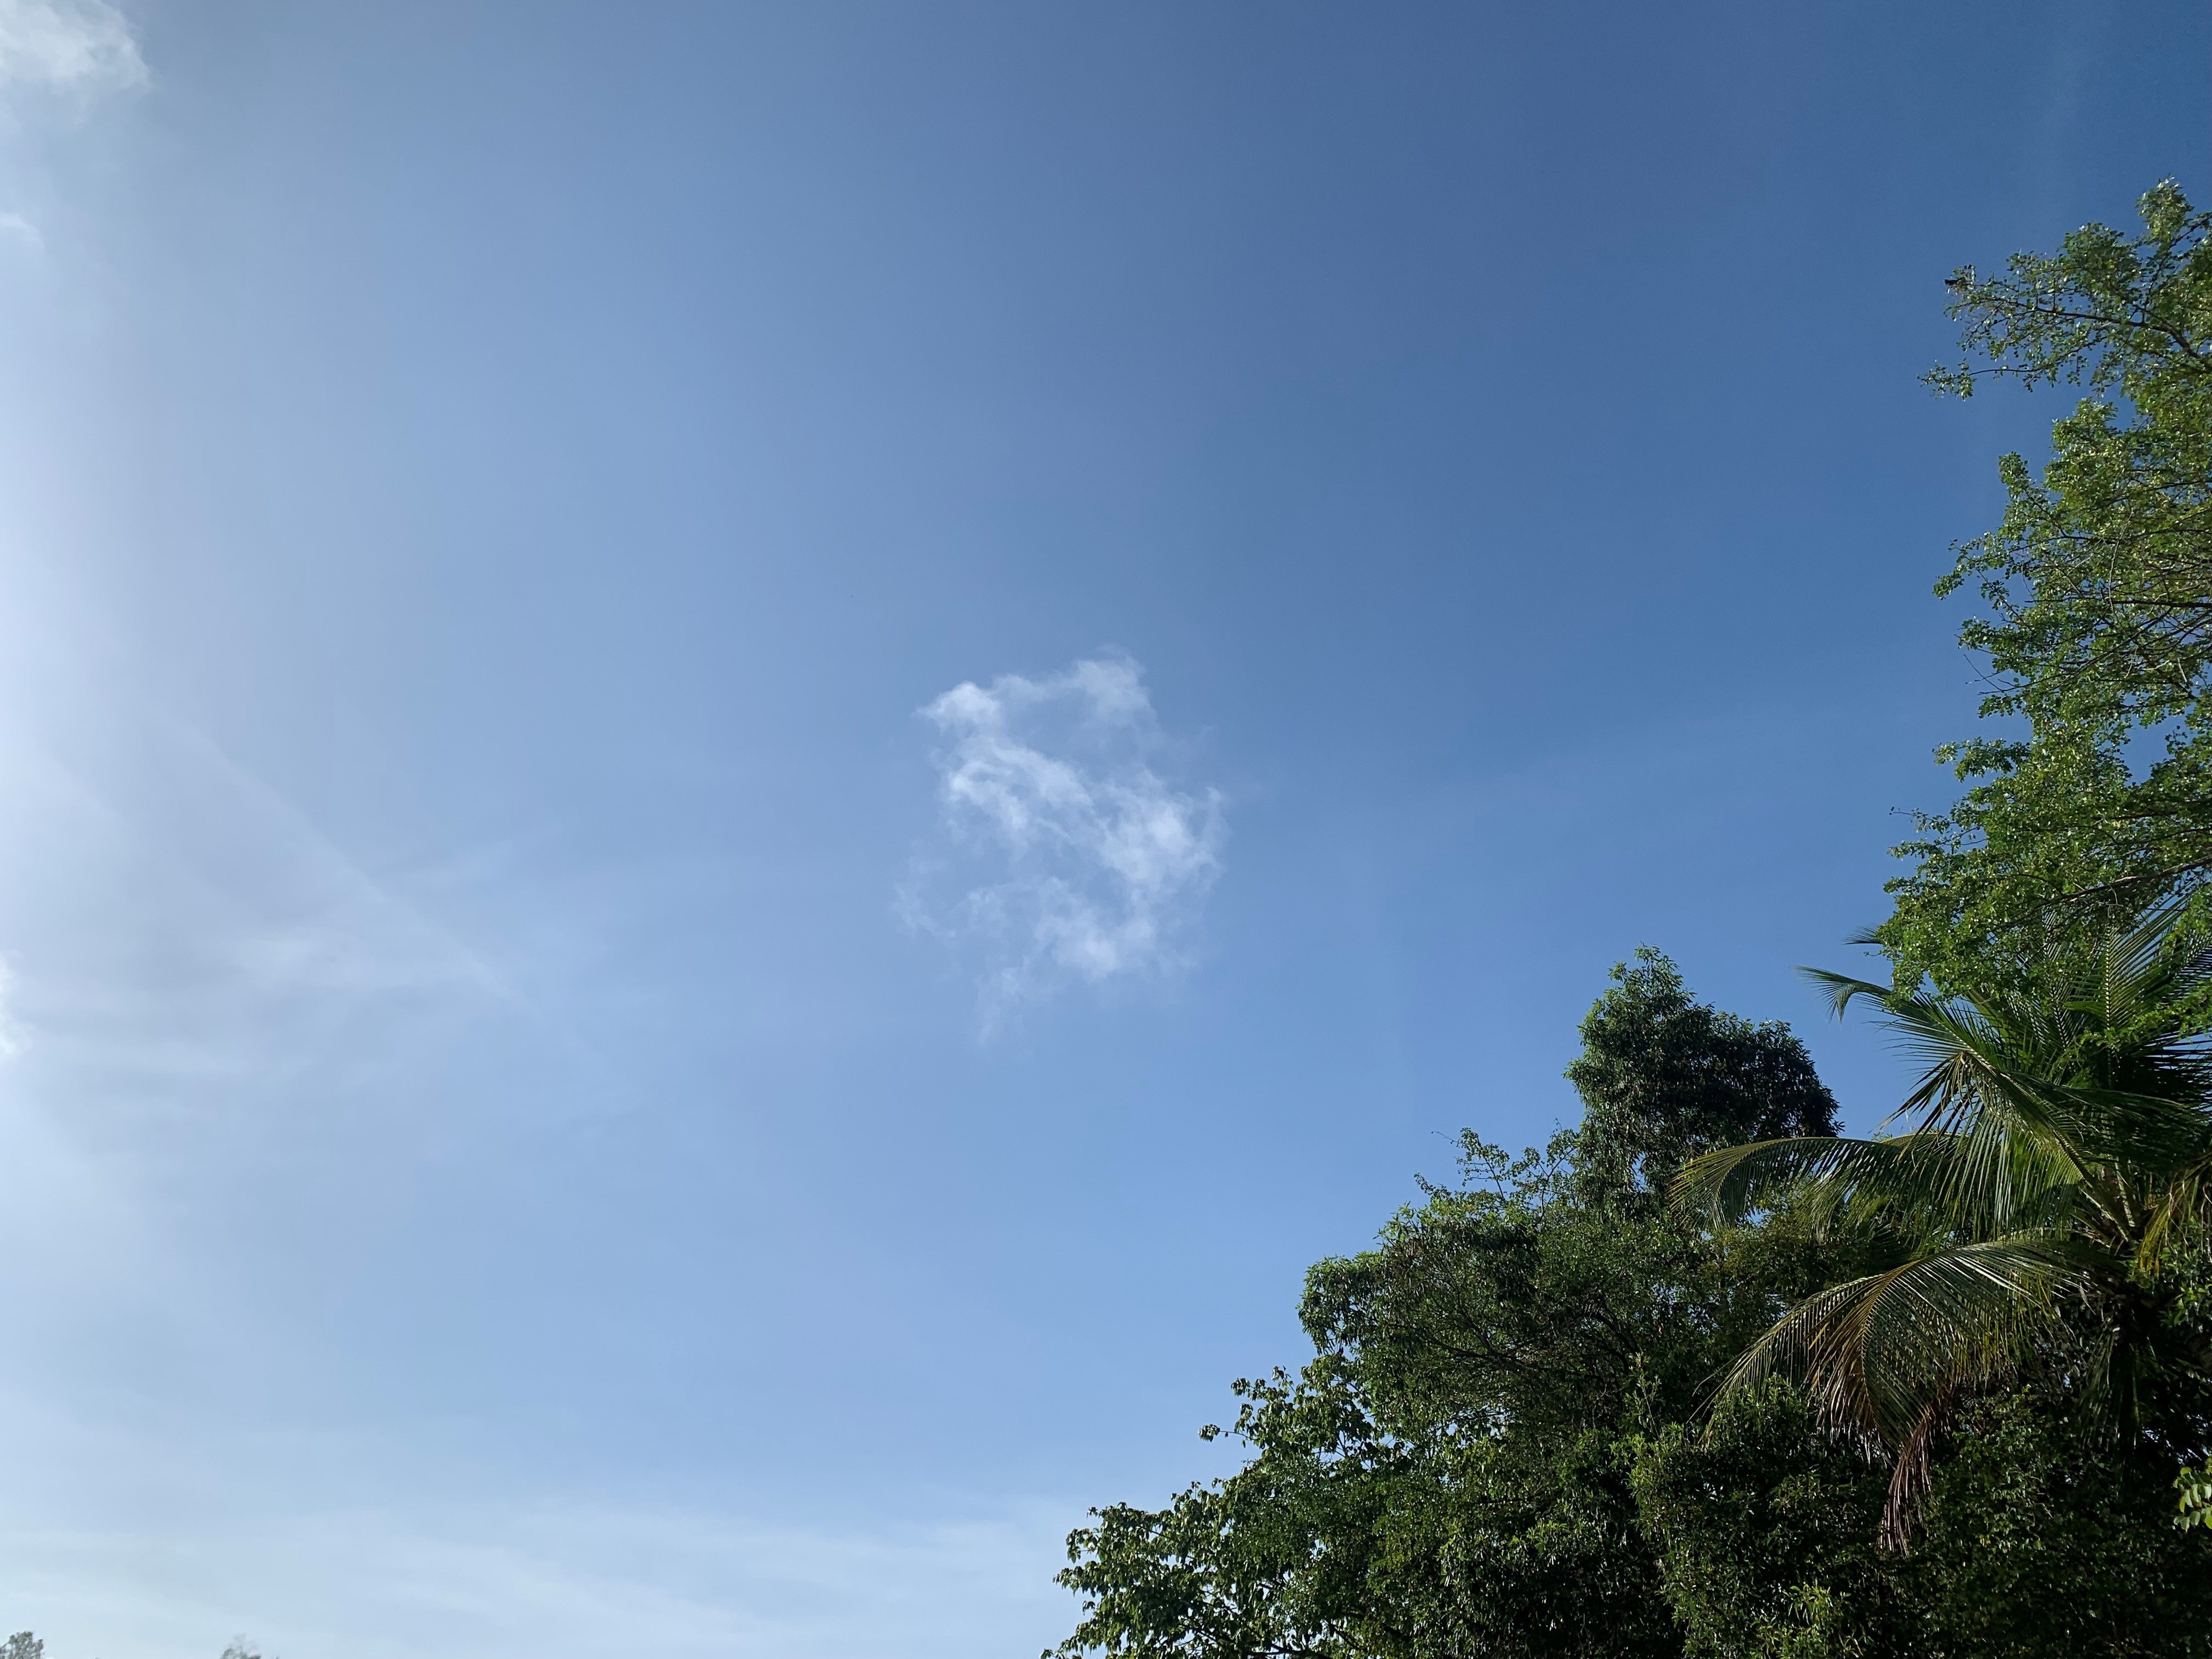     Après les fortes pluies, la Martinique repasse au Vert 

